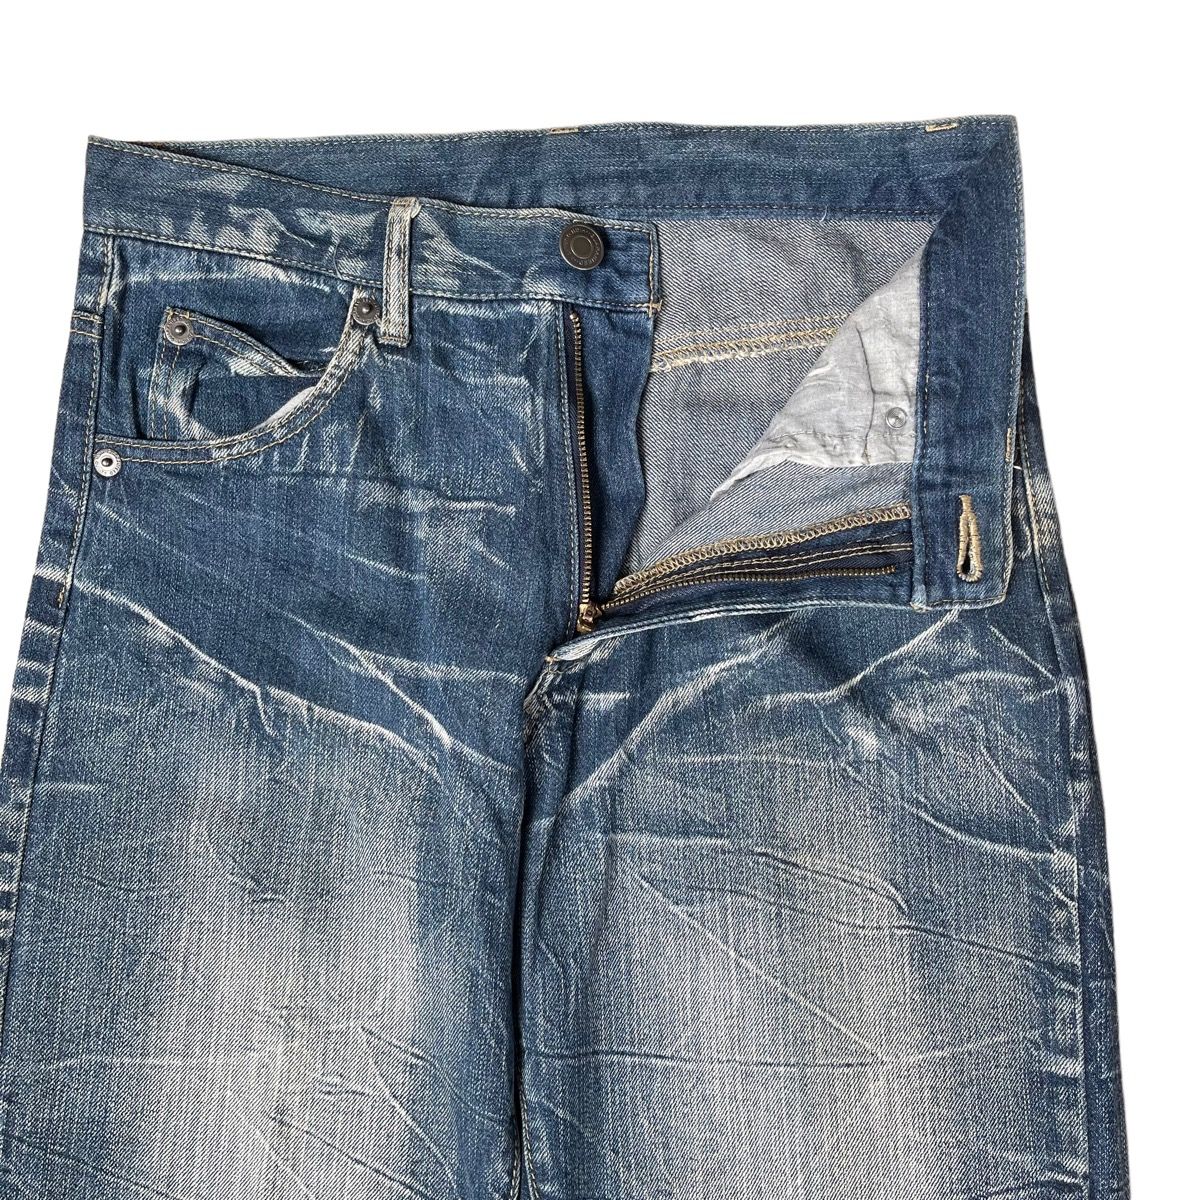 Japanase Unbrand Denim Flare Jeans 30 - 4